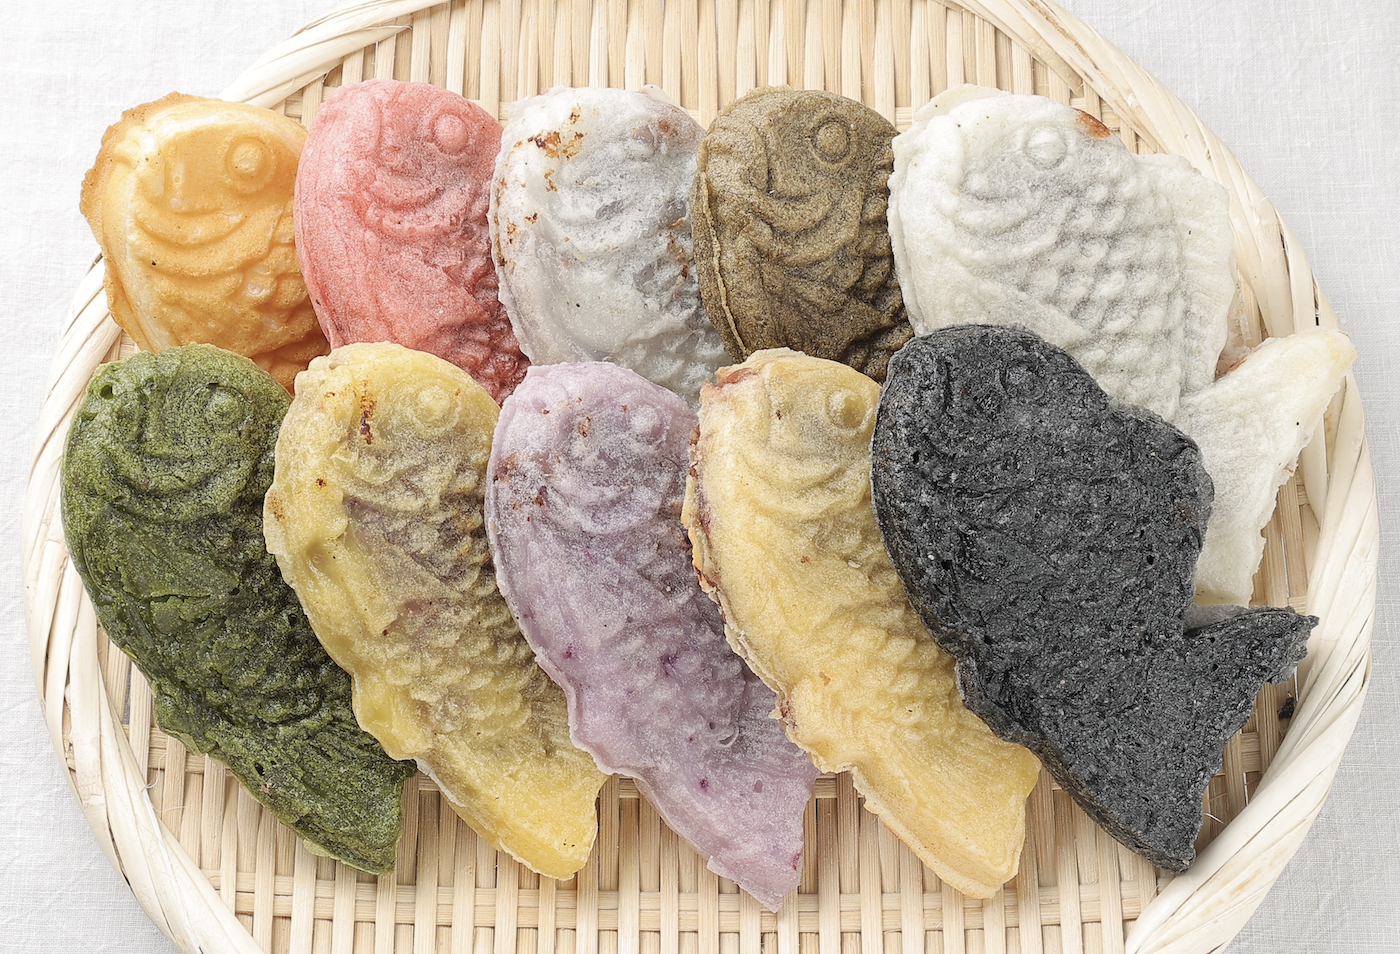 野菜鯛焼き・小麦粉不使用鯛焼きなど新しい商品を提供する
「鯛餡日和」が大阪市平野区のシェアキッチンにオープン！